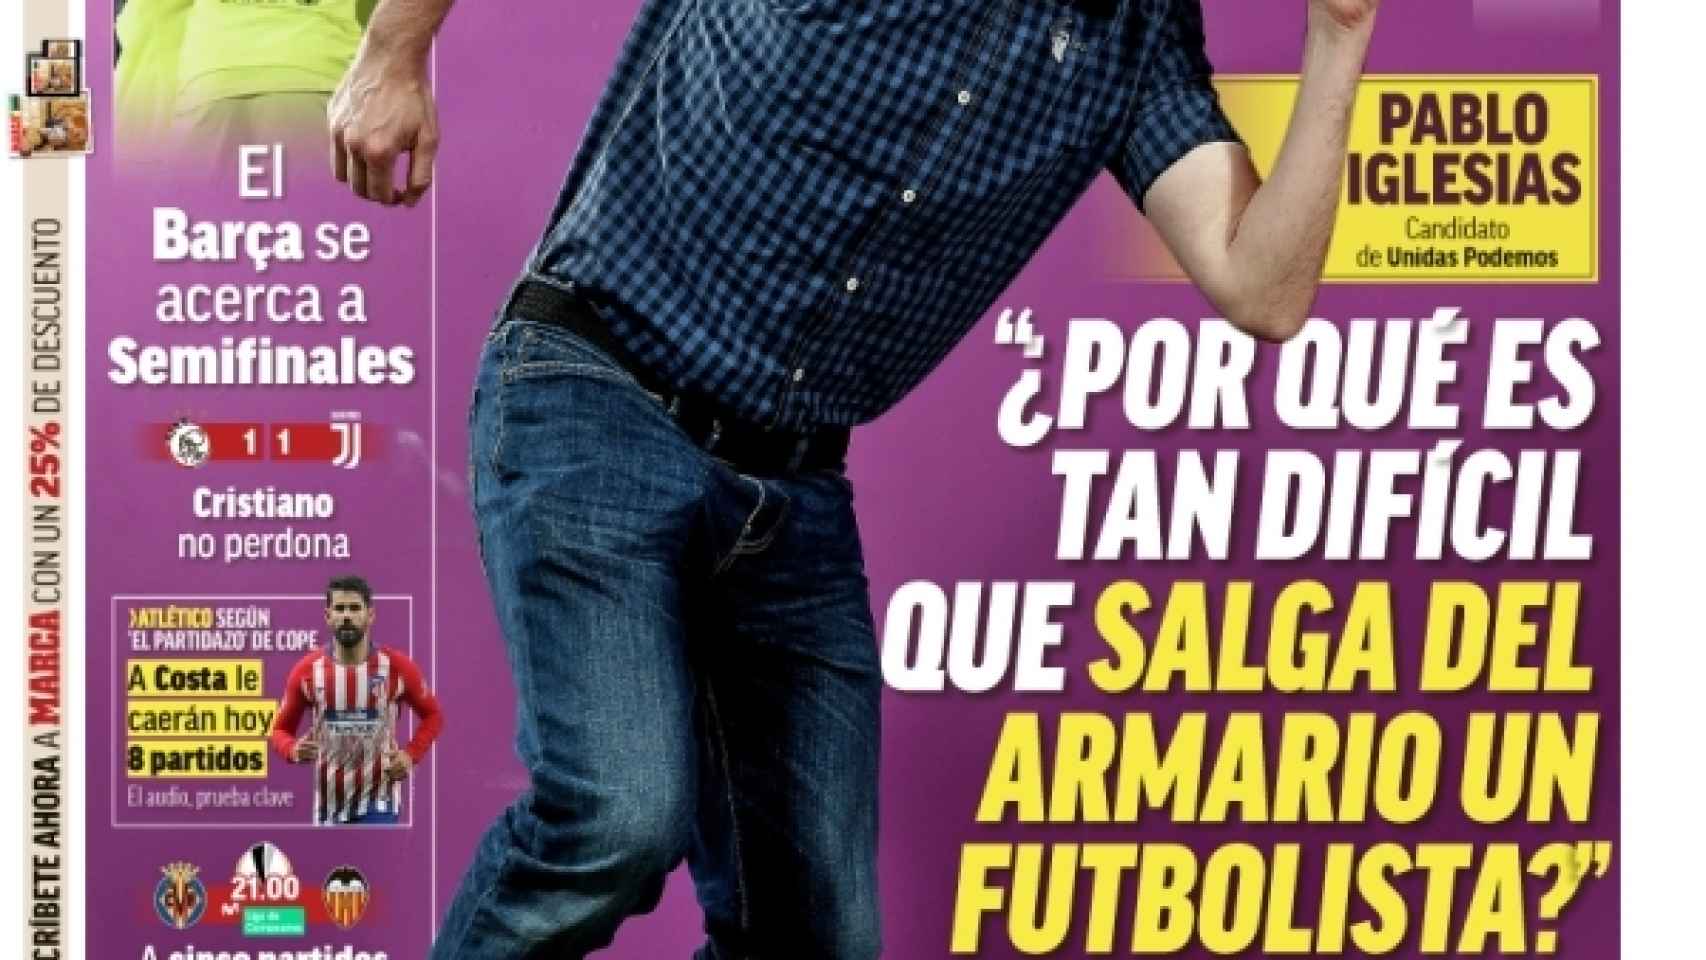 Pablo Iglesias en la portada de Marca.